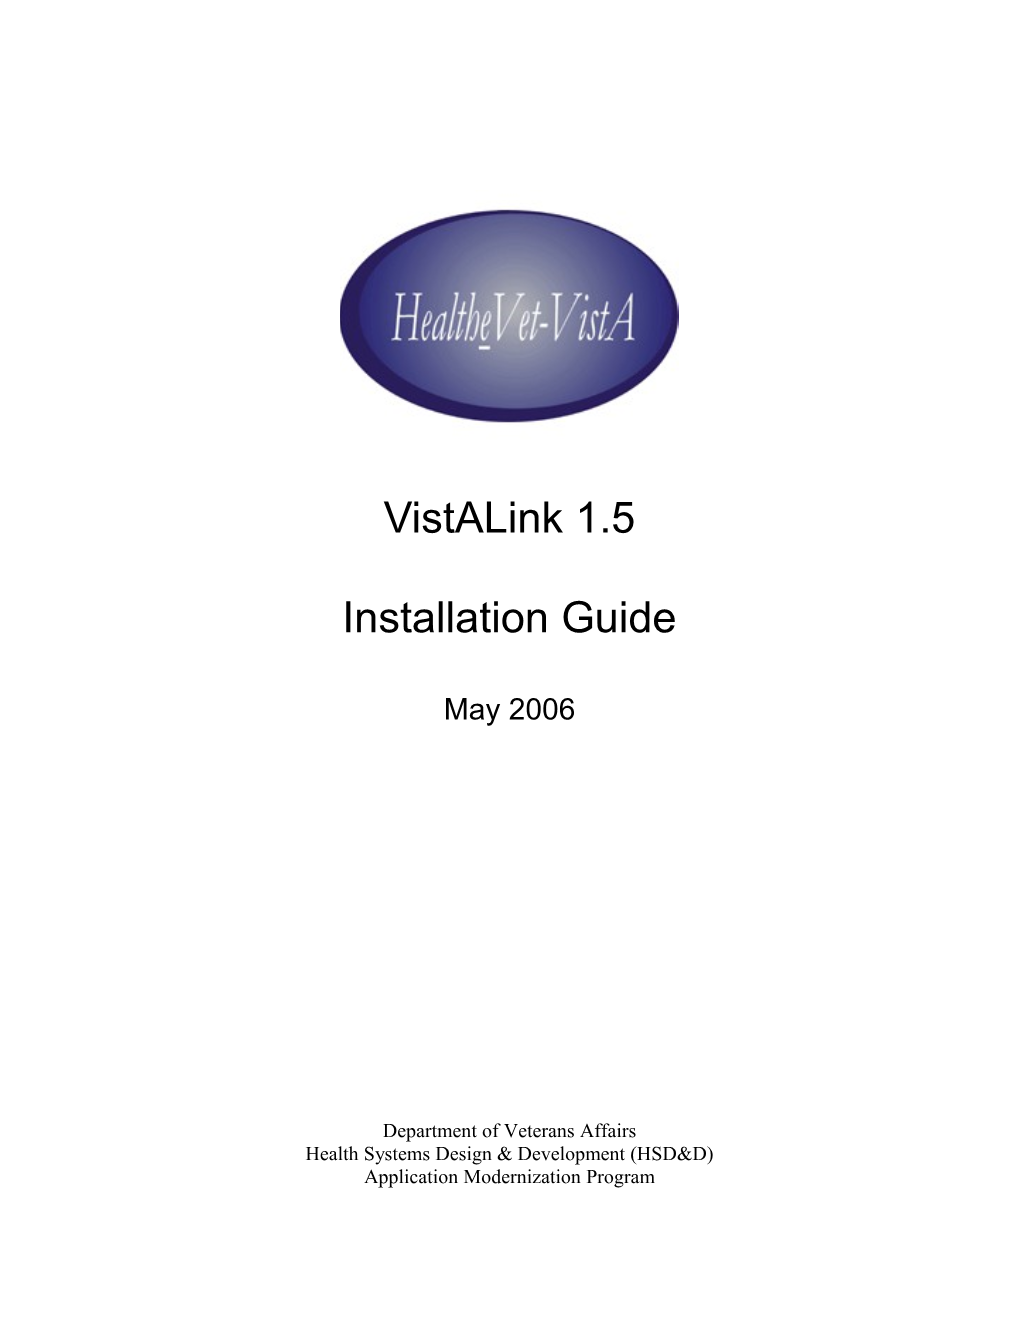 Vistalink 1.5 Install Guide